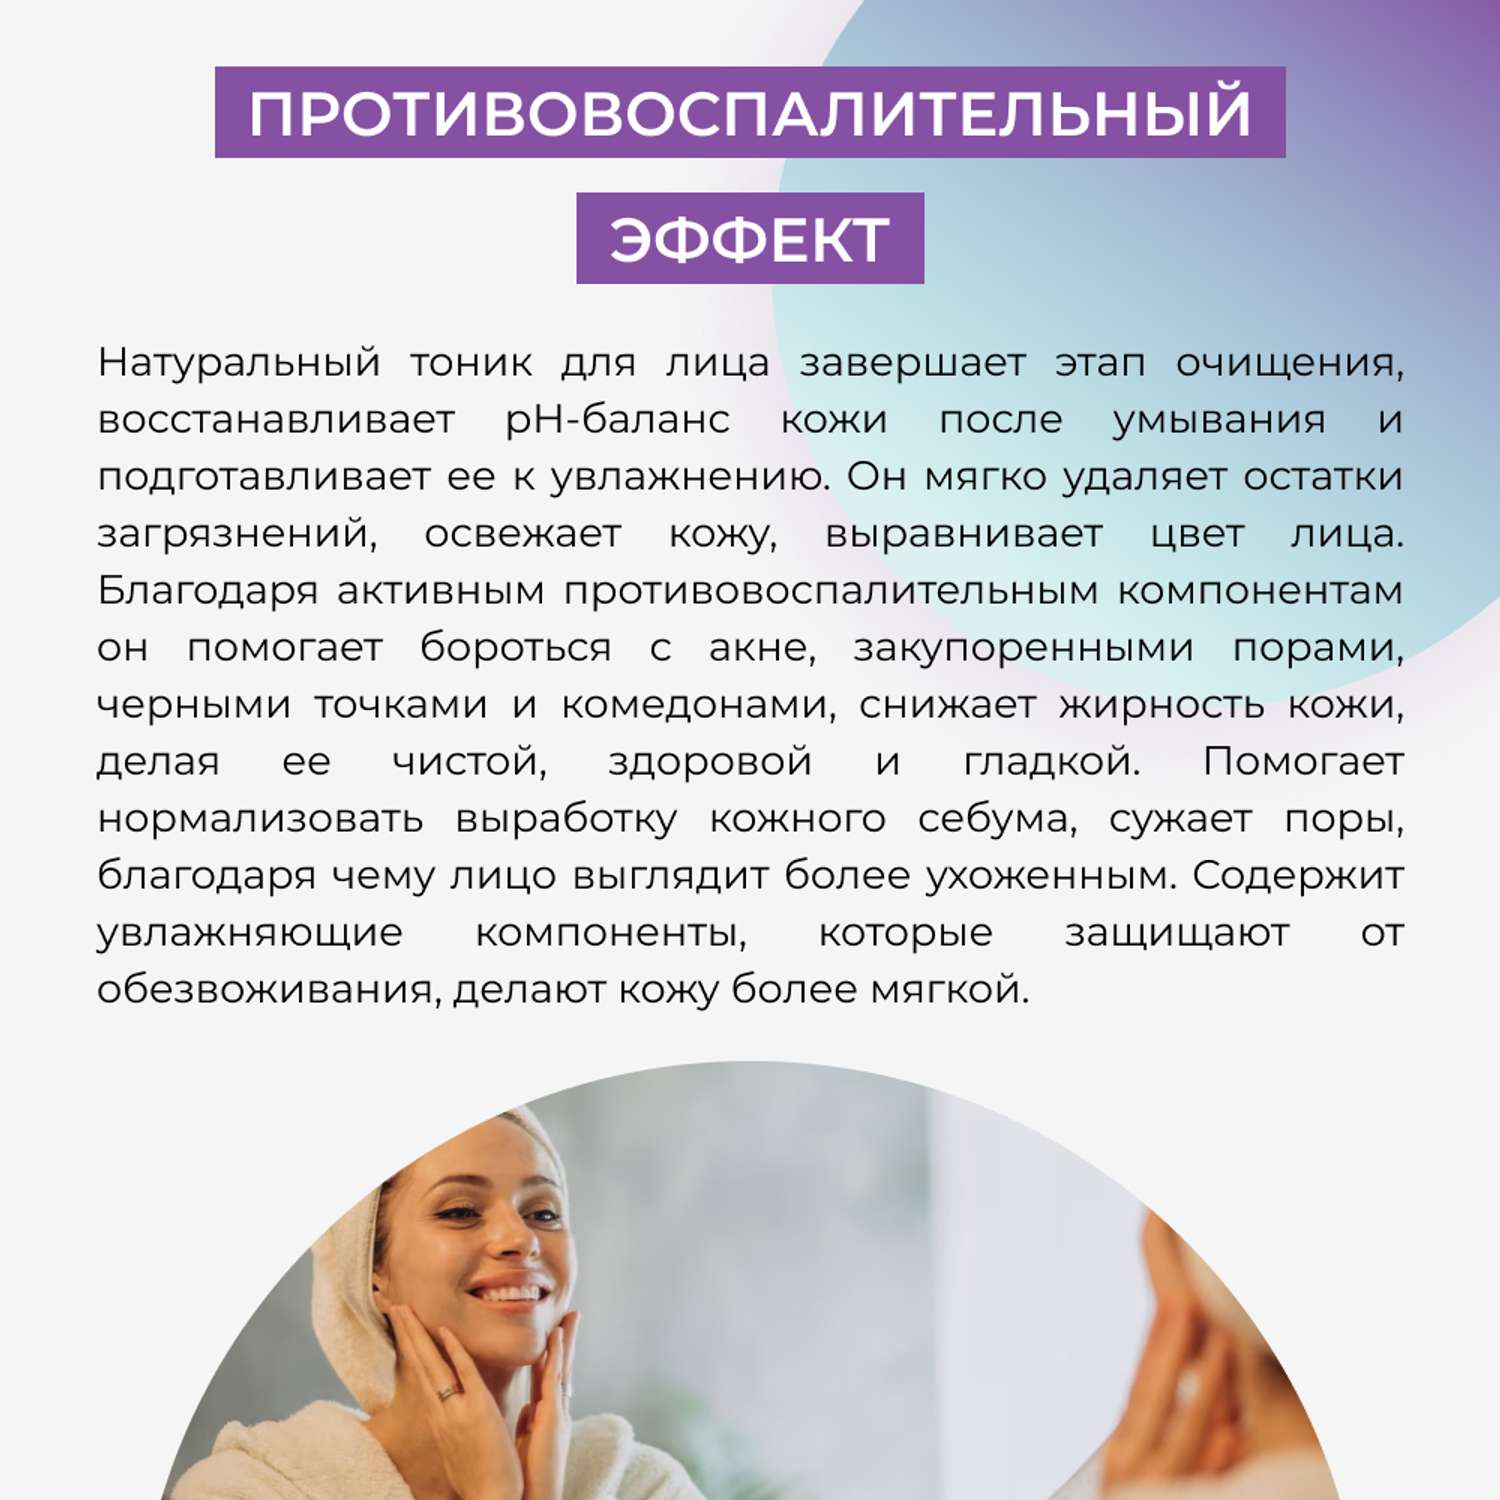 Тоник для лица Siberina натуральный «Противовоспалительный» с антисептическим действием 50 мл - фото 6